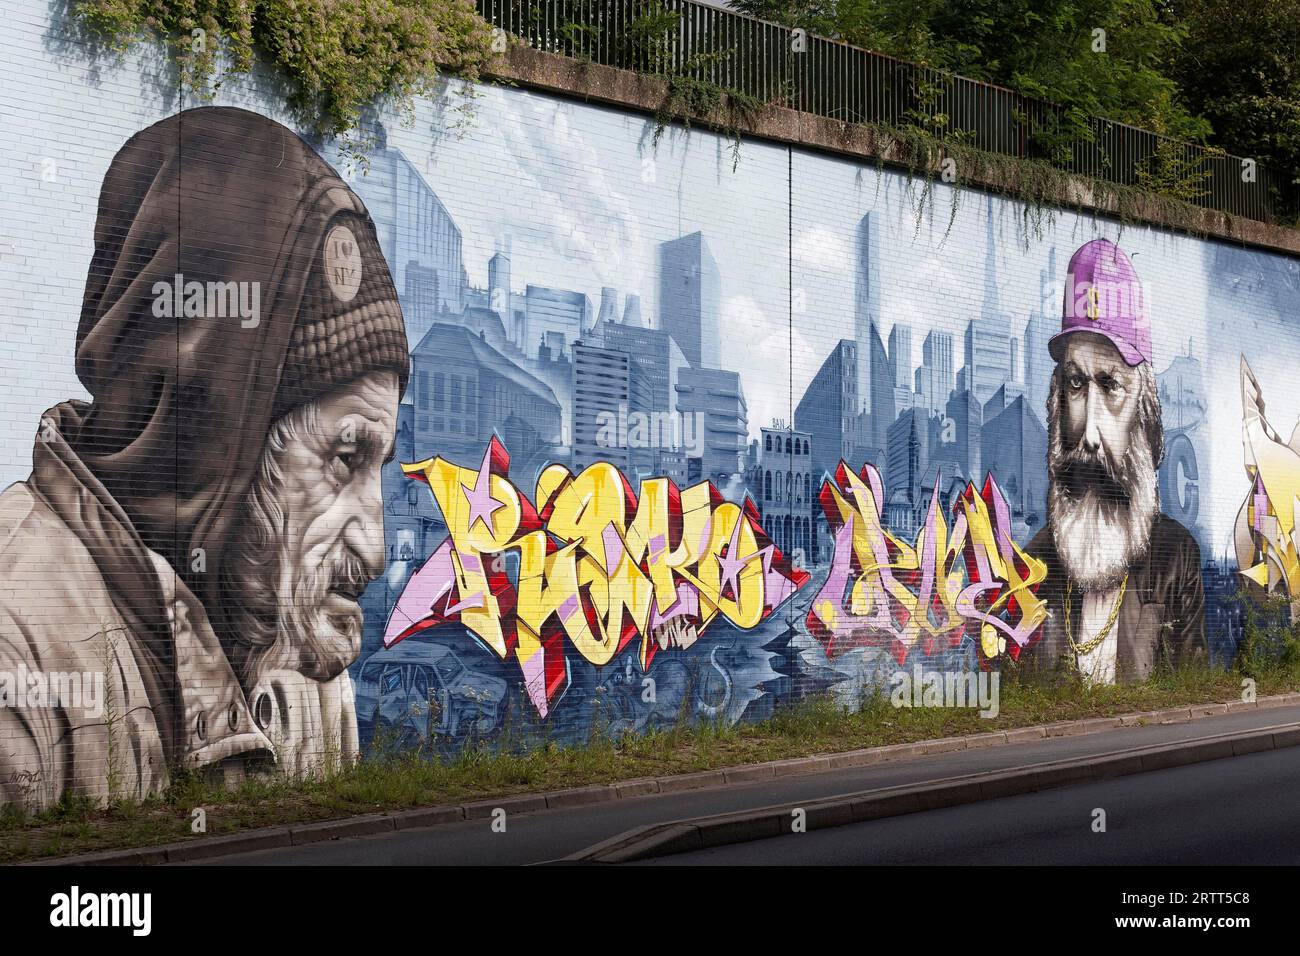 Hombre sin hogar y Karl Marx en yuxtaposición, retratos frente al horizonte de la gran ciudad, mural socialmente crítico por los artistas callejeros INTRO y DOE Foto de stock